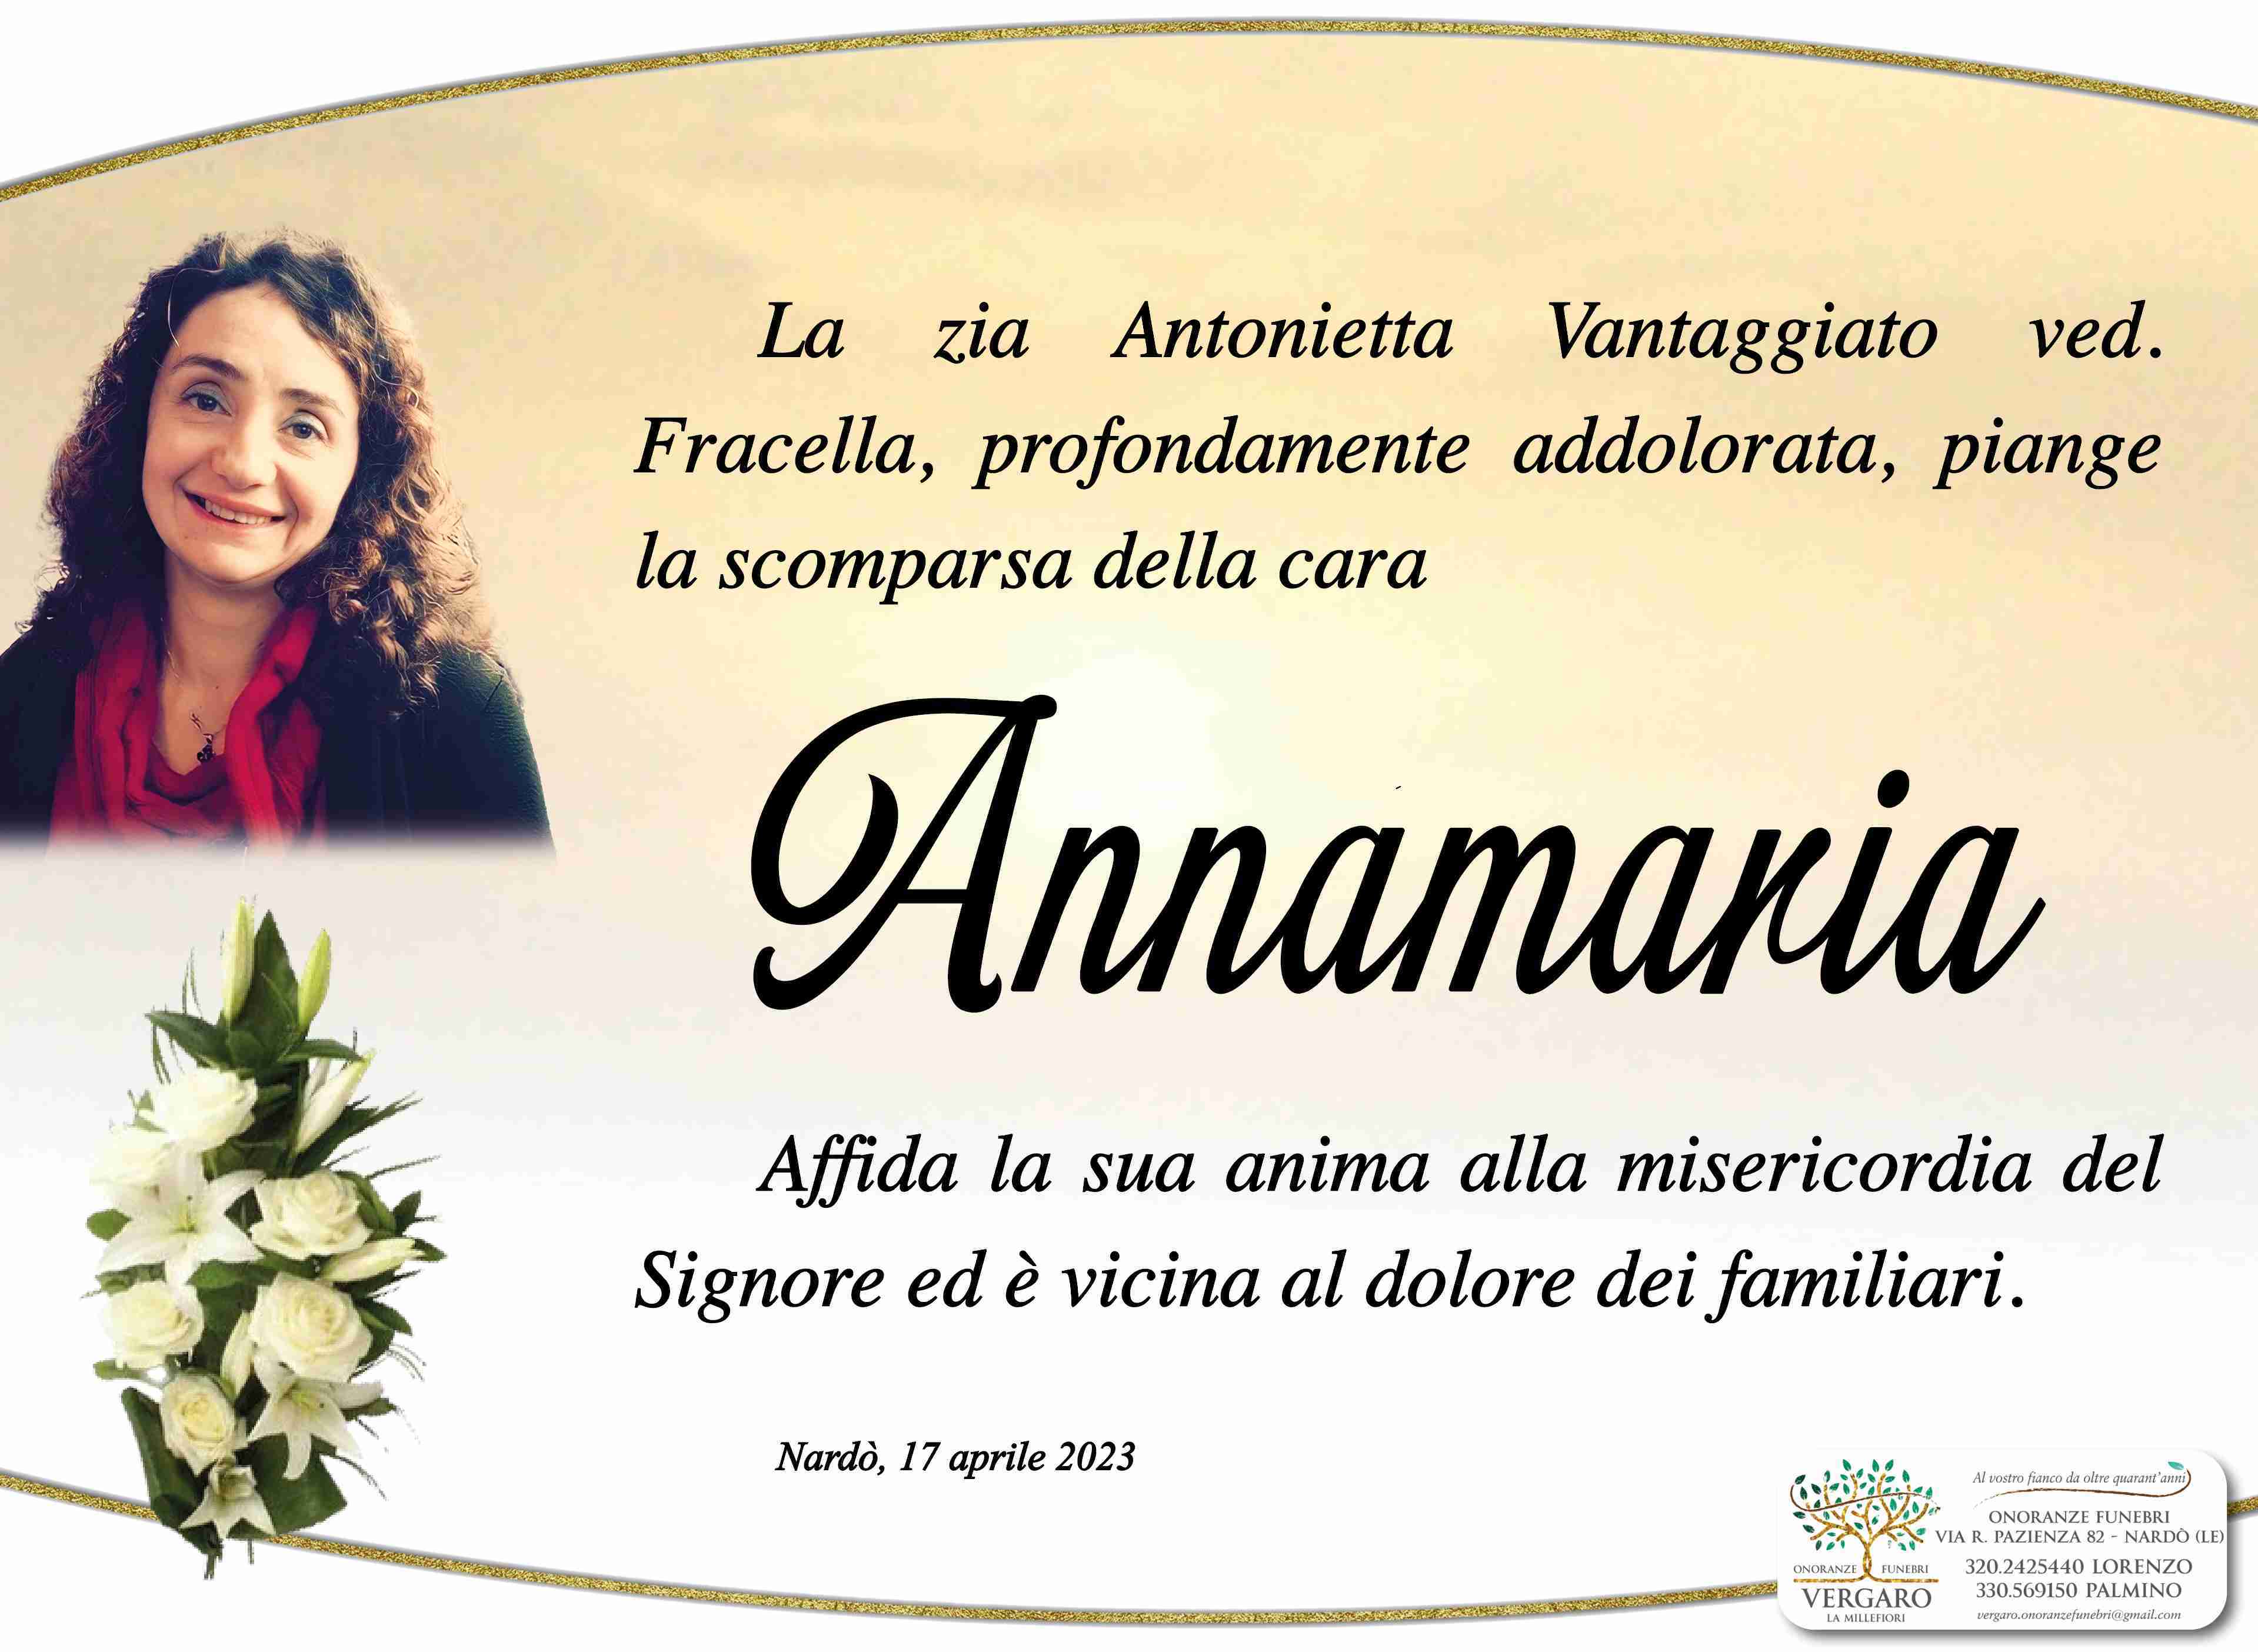 Annamaria Fracella